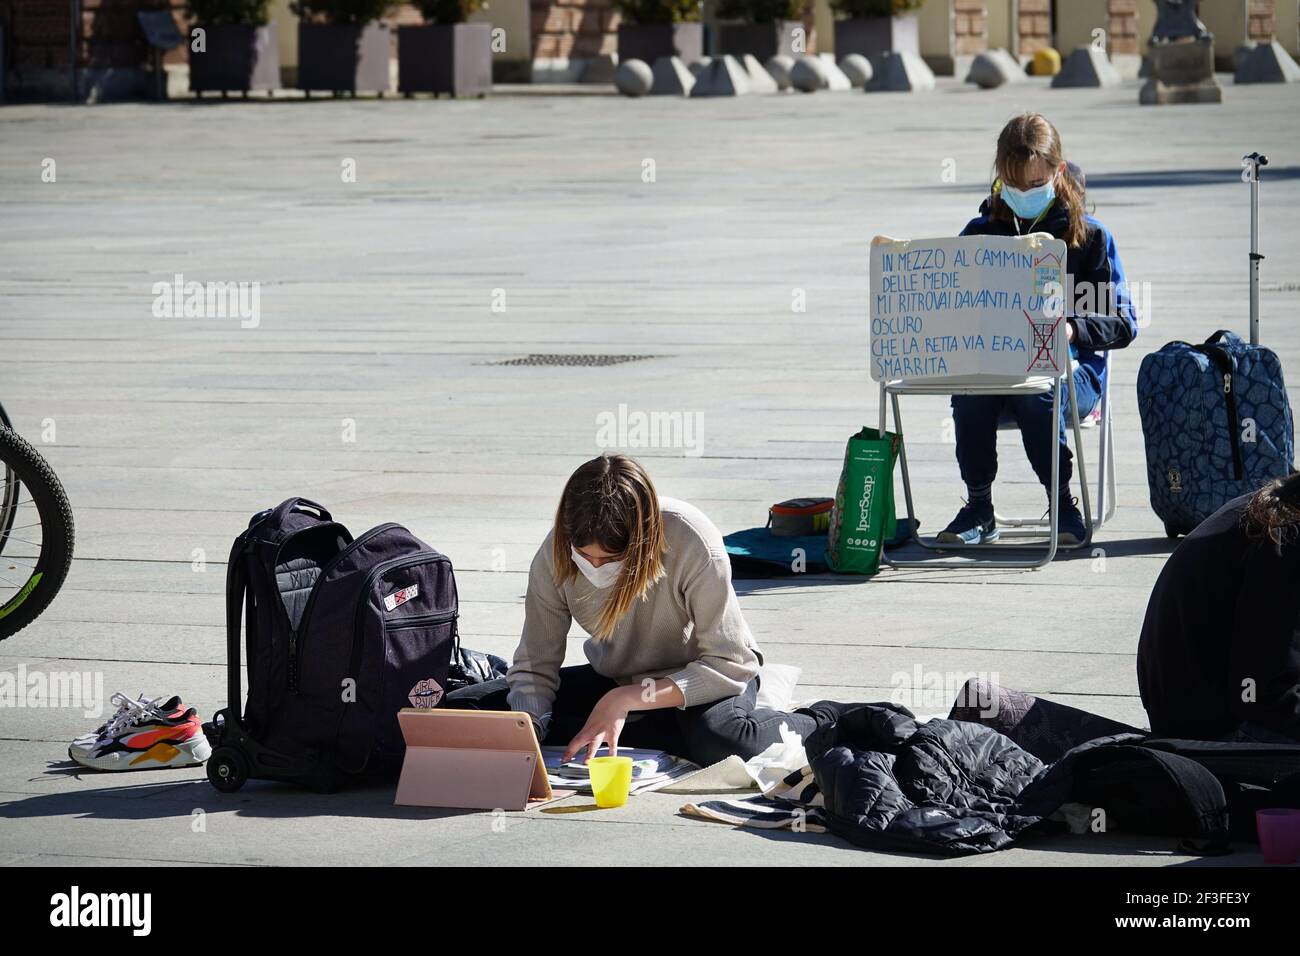 Italienischer Student nimmt Fernunterricht auf der Straße aus Protest gegen Schließung der Covid-Schule Turin, Italien - März 2021 Stockfoto